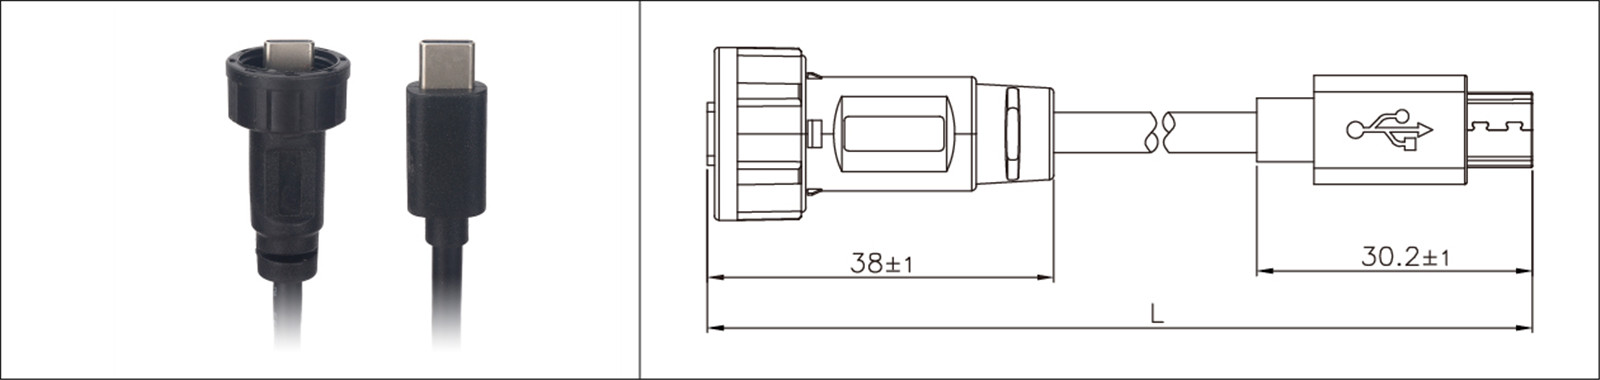 مايكرو USB لوحة جبل نوع 2.0 3.0 أنثى وذكر مقاوم للماء IP67 كابل تمديد overmold الصناعية Connecto-02 (14)